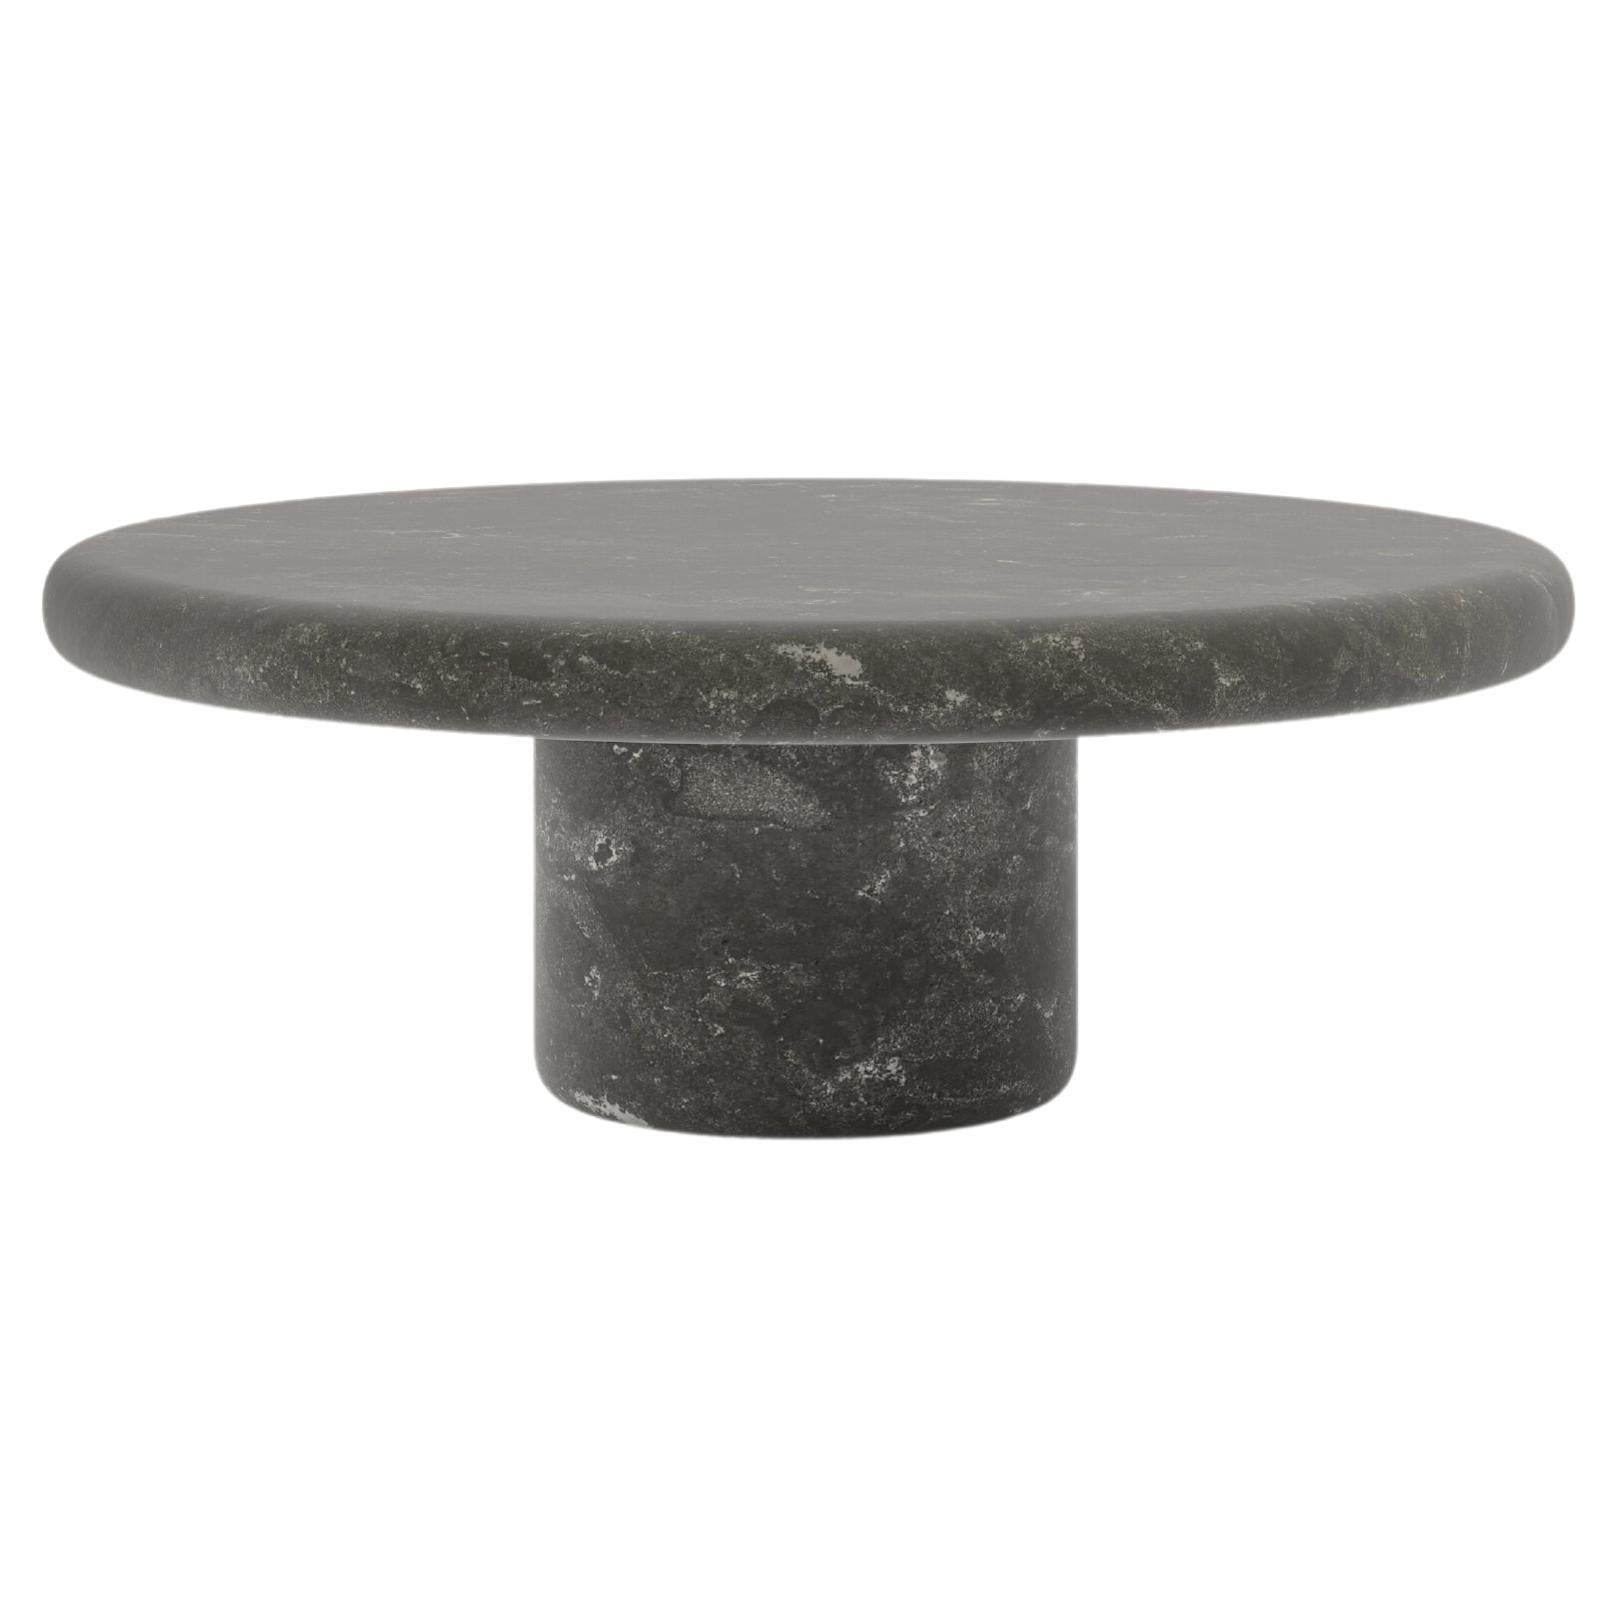 FORM(LA) Luna Round Coffee Table 48”L x 48”W x 15”H Nero Petite Granite